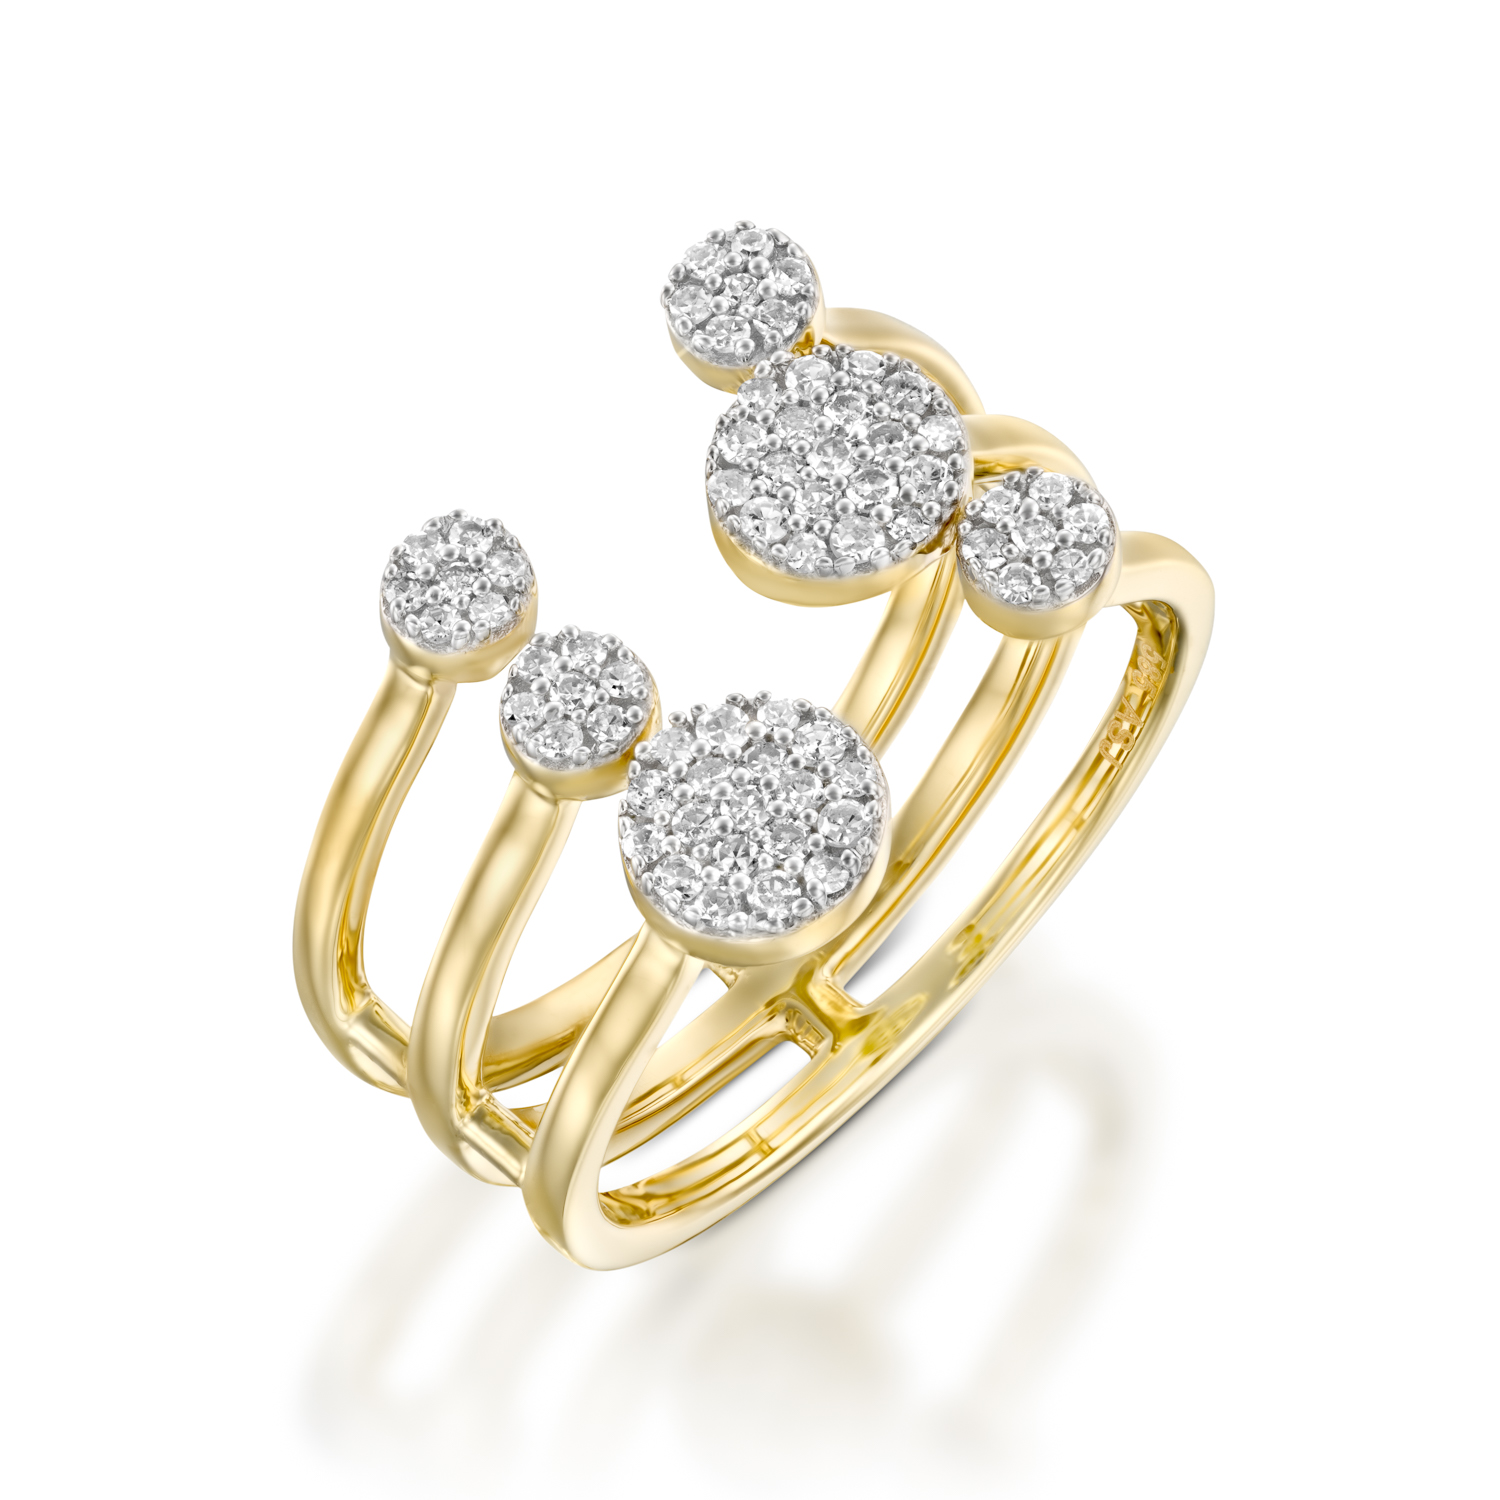 טבעת צלילי האהבה זהב צהוב משובץ יהלומים של סנדרה רינגלר לרשת אימפרס ב-2,690שח במקום 5,918שח. צילום - יחצ